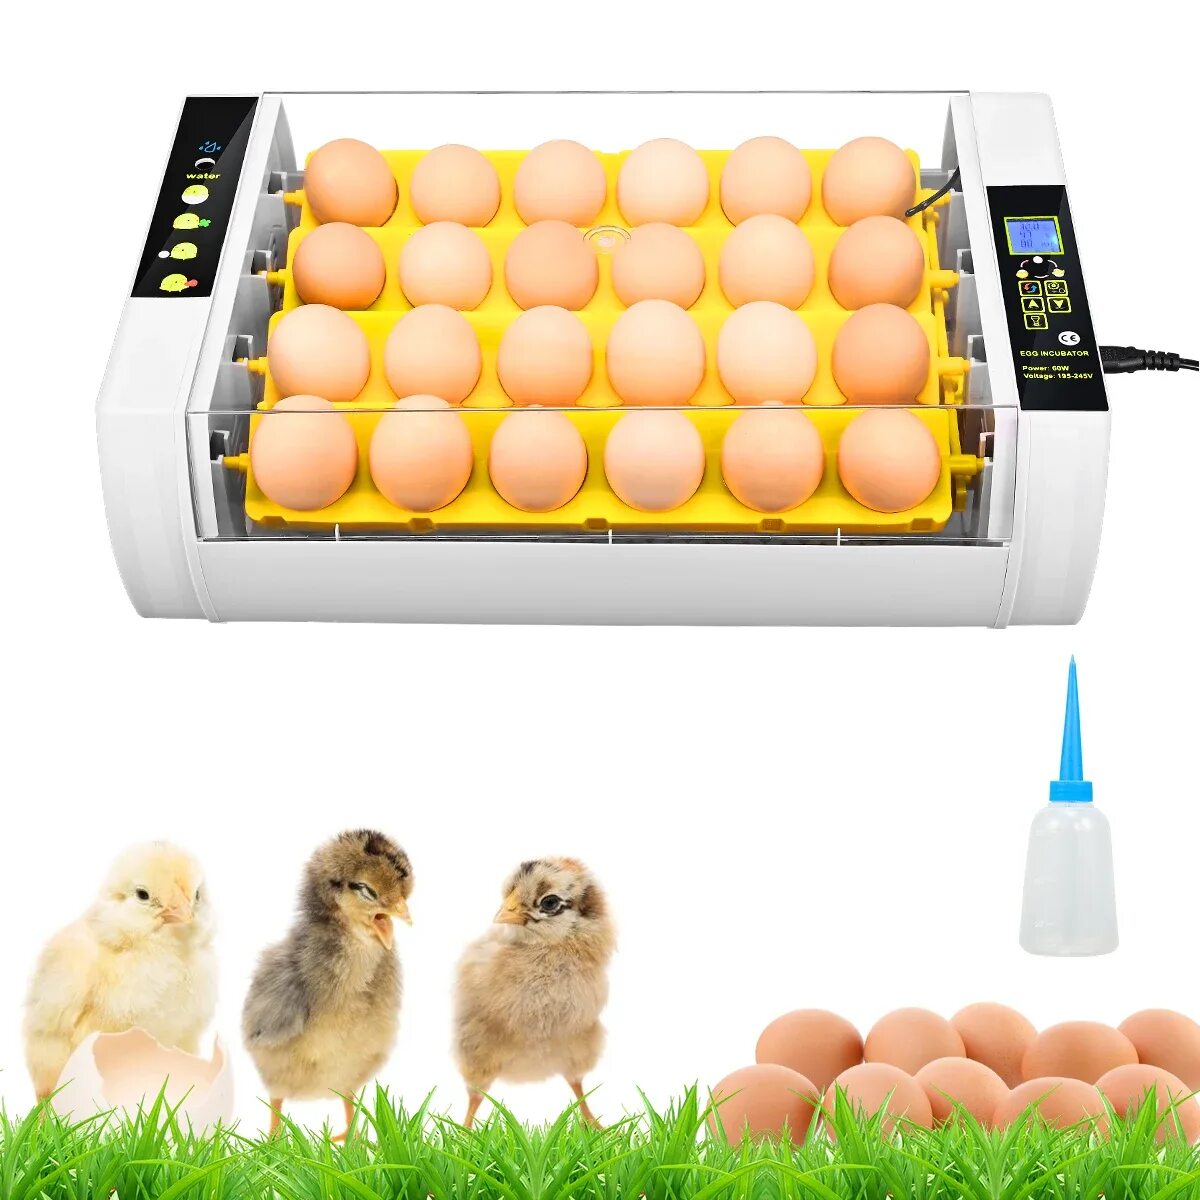 Полностью автоматический инкубатор. Инкубатор Egg incubator. Инкубатор для яиц Egg incubator QC Pass 04. Fully Automatic Egg incubator. Инкубатор для яиц fully Automatic Egg Incubato.